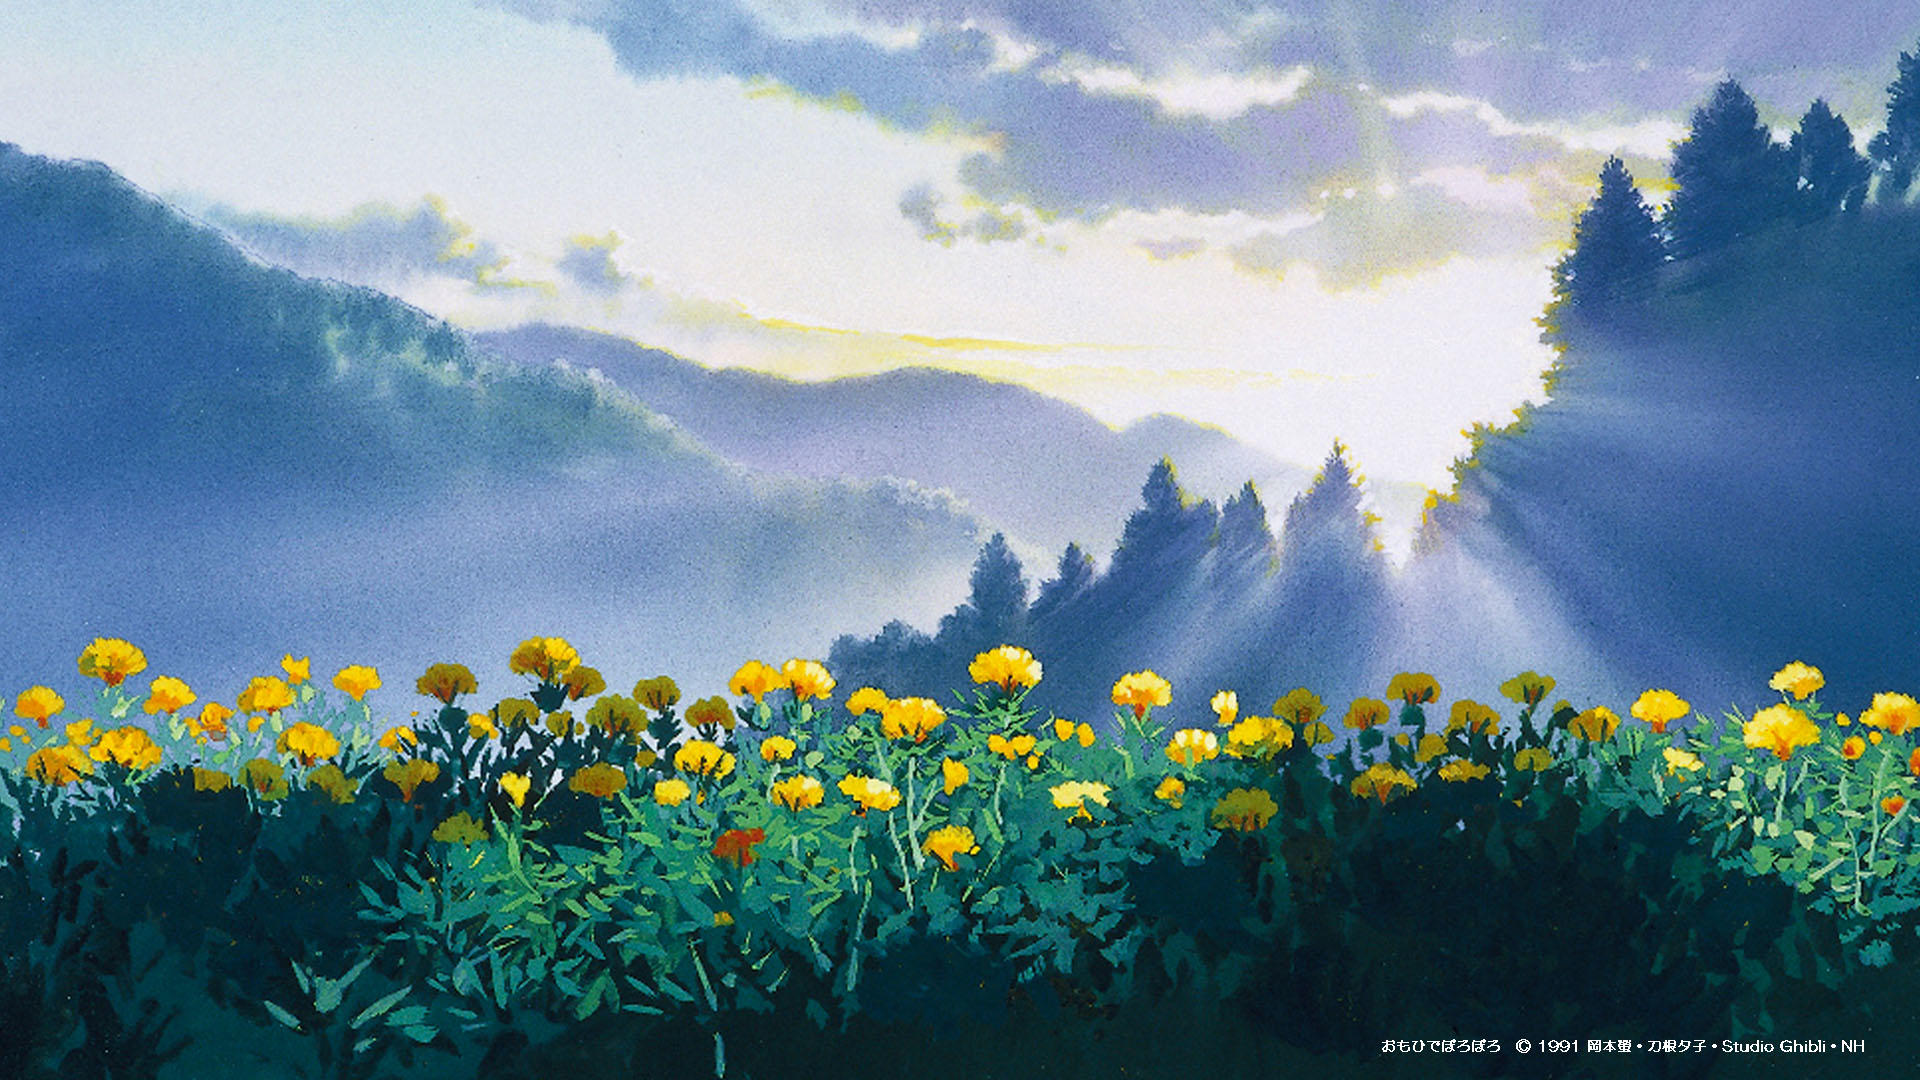 Top 24 ảnh nền ảo Studio Ghibli dành cho Zoom